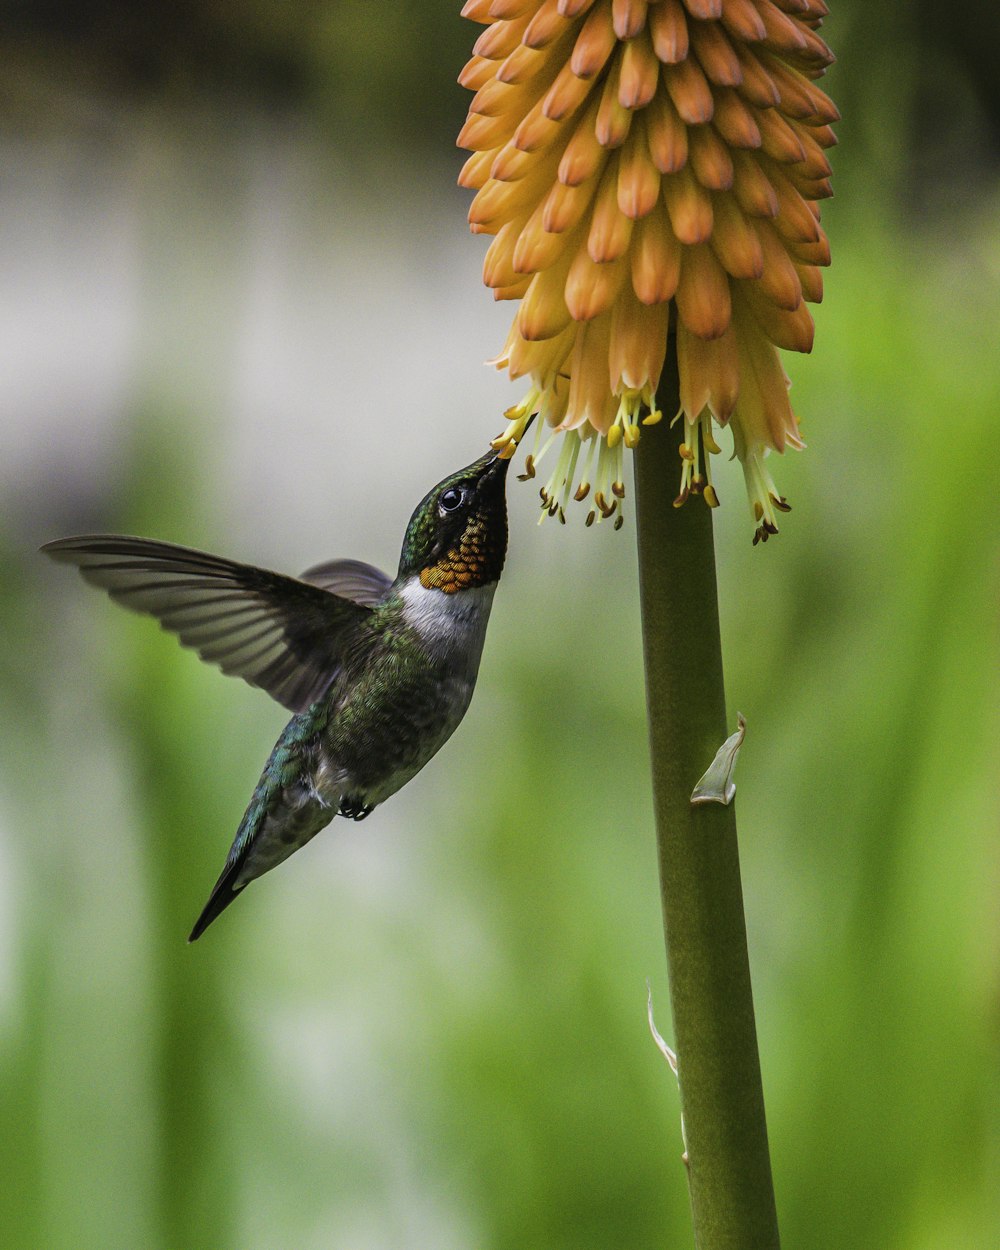 Brauner Kolibri fliegt tagsüber in der Nähe der orangefarbenen Blume